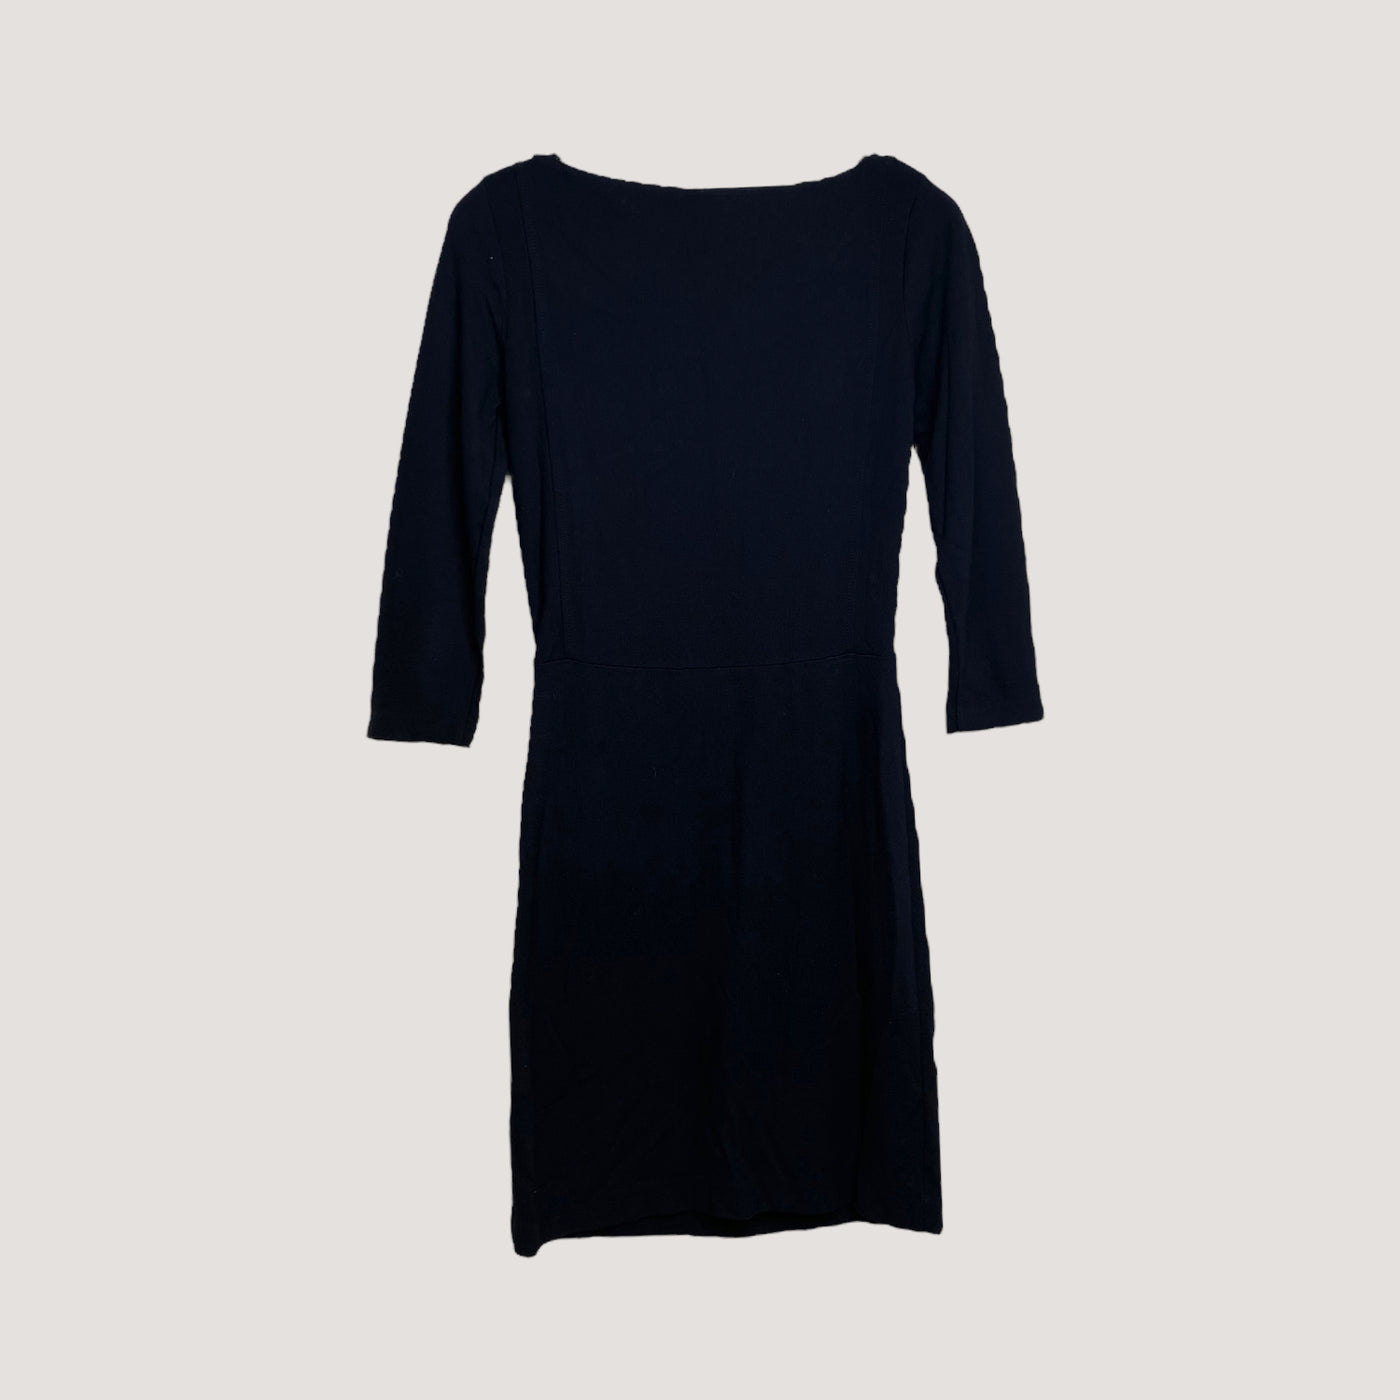 Filippa K tricot dress, black | women XS